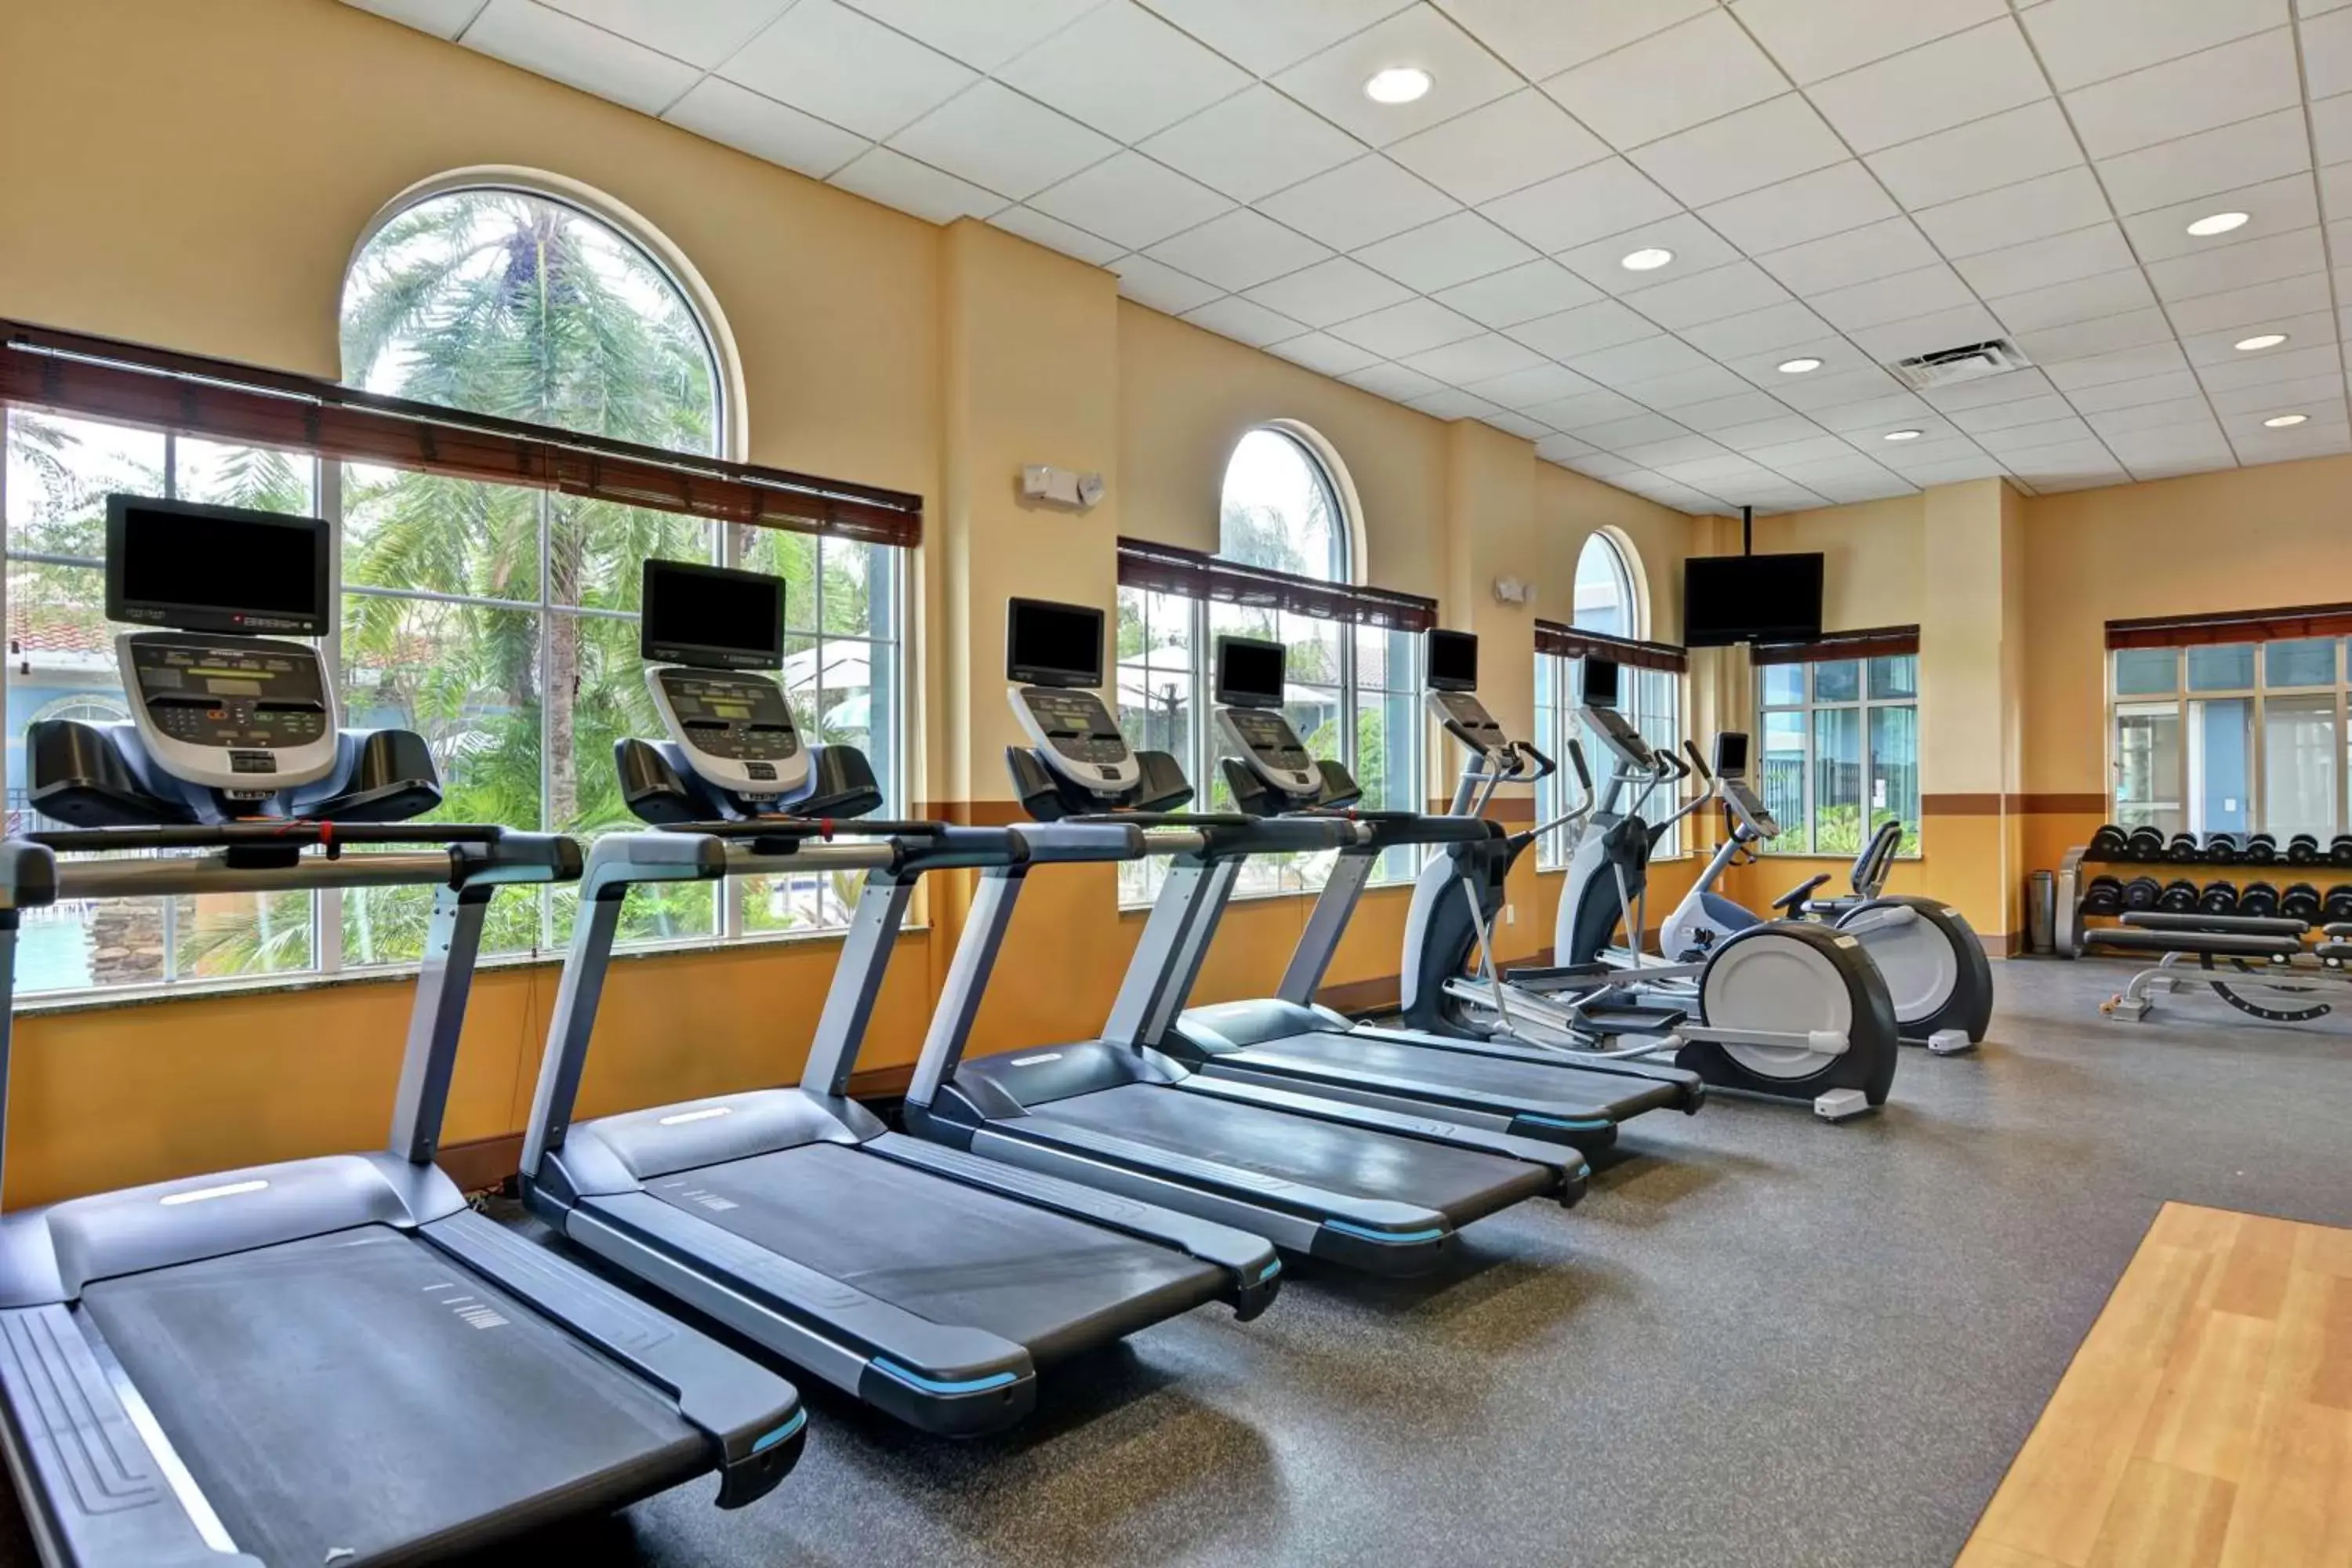 Fitness centre/facilities, Fitness Center/Facilities in Hilton Garden Inn Orlando Lake Buena Vista